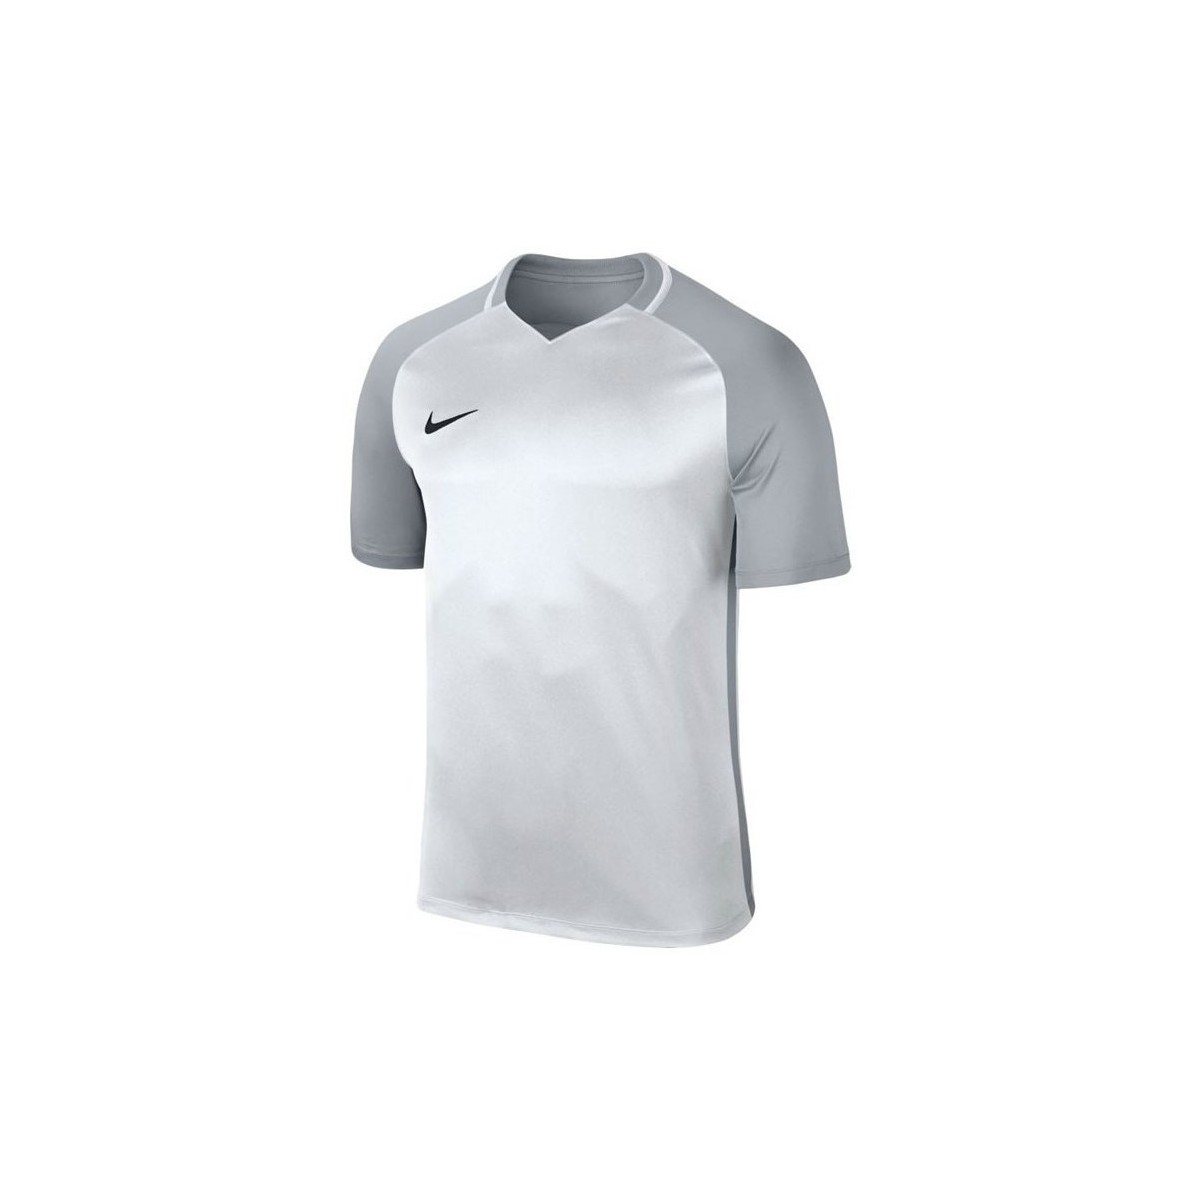 Vêtements Garçon T-shirts manches courtes Nike JR Dry Trophy Iii Jersey Gris, Argent